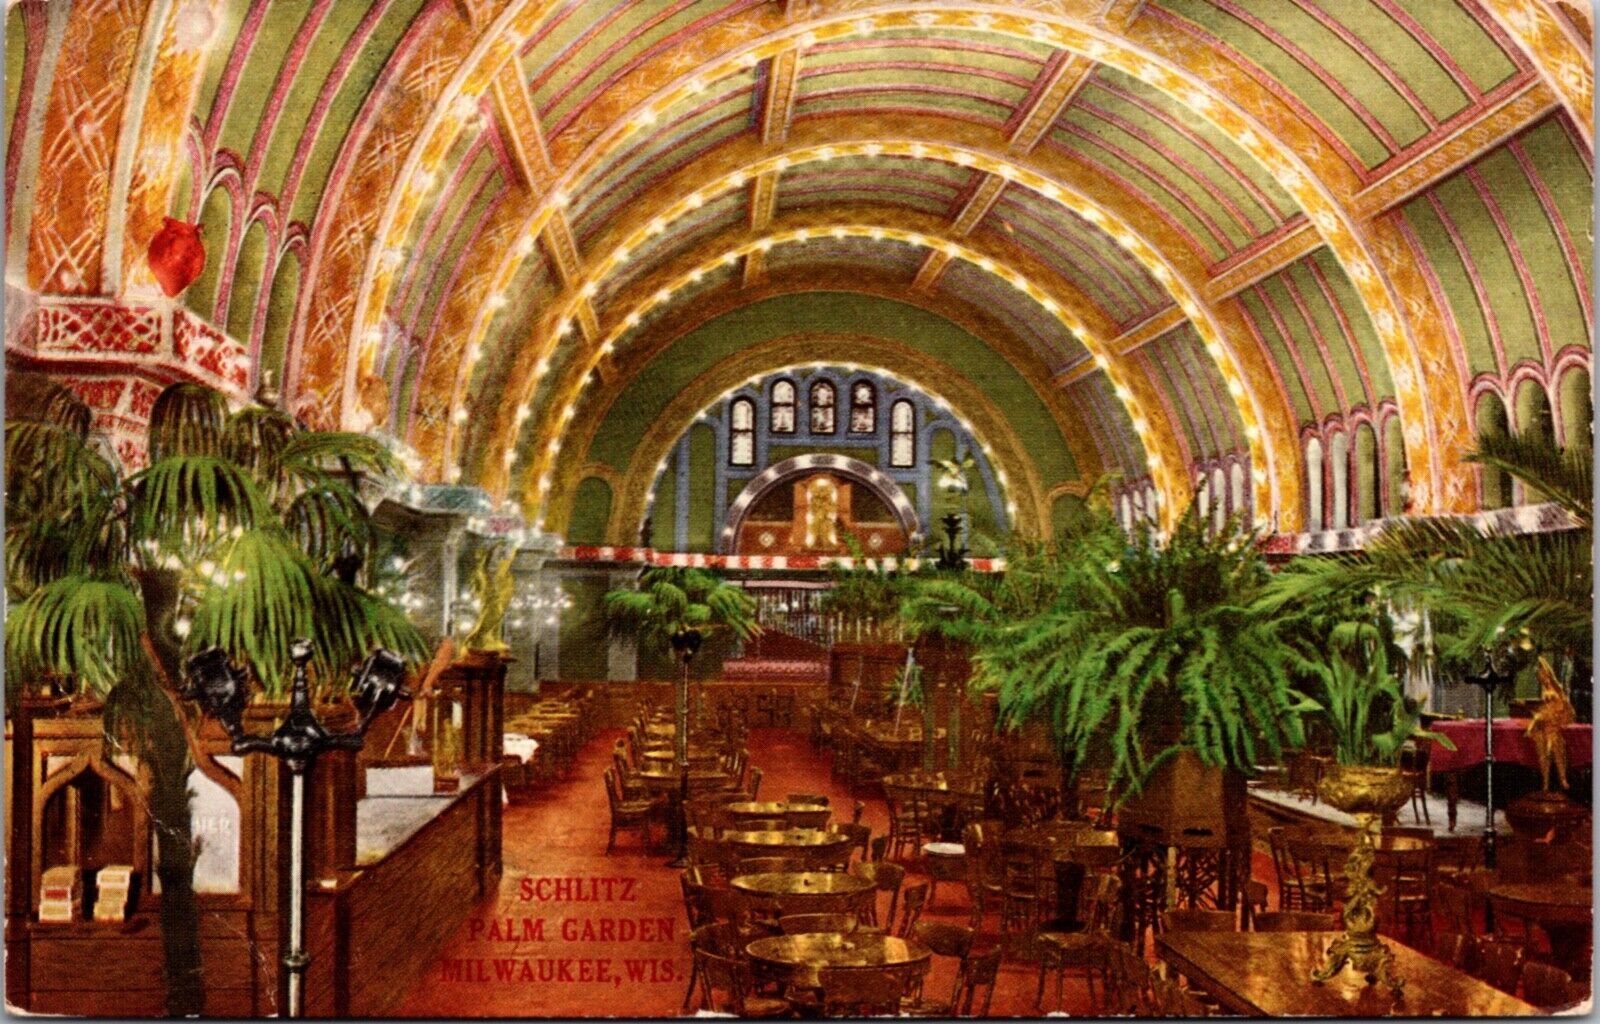 Postcard Schlitz Palm Garden in Milwaukee, Wisconsin